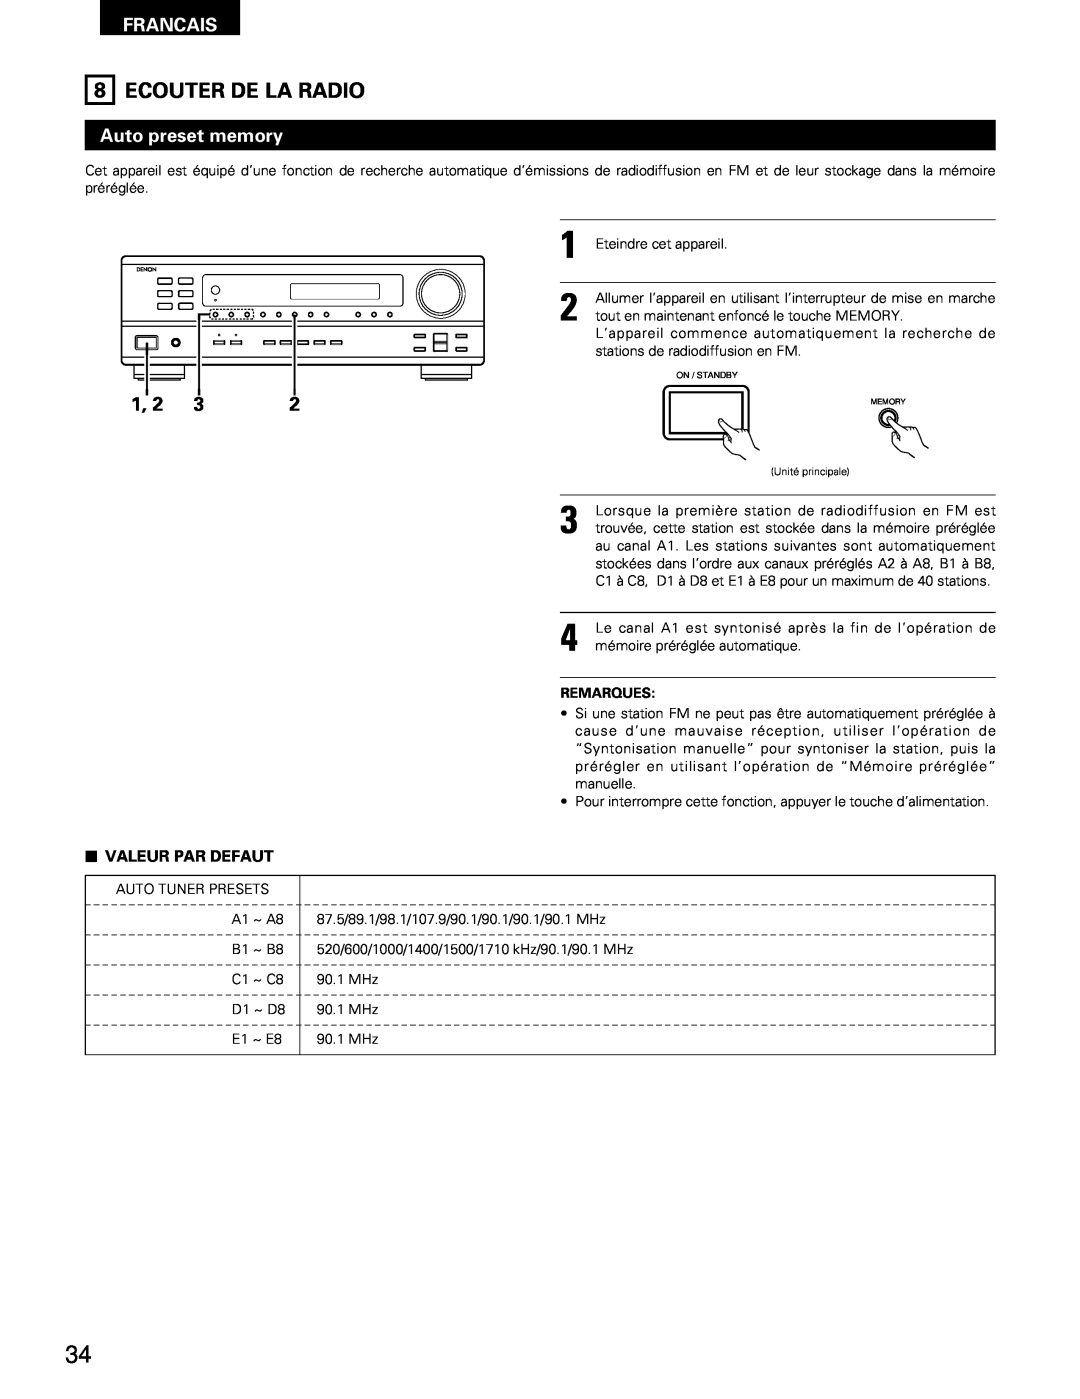 Denon DRA-295 manual Ecouter De La Radio, Francais, Auto preset memory, 2VALEUR PAR DEFAUT 